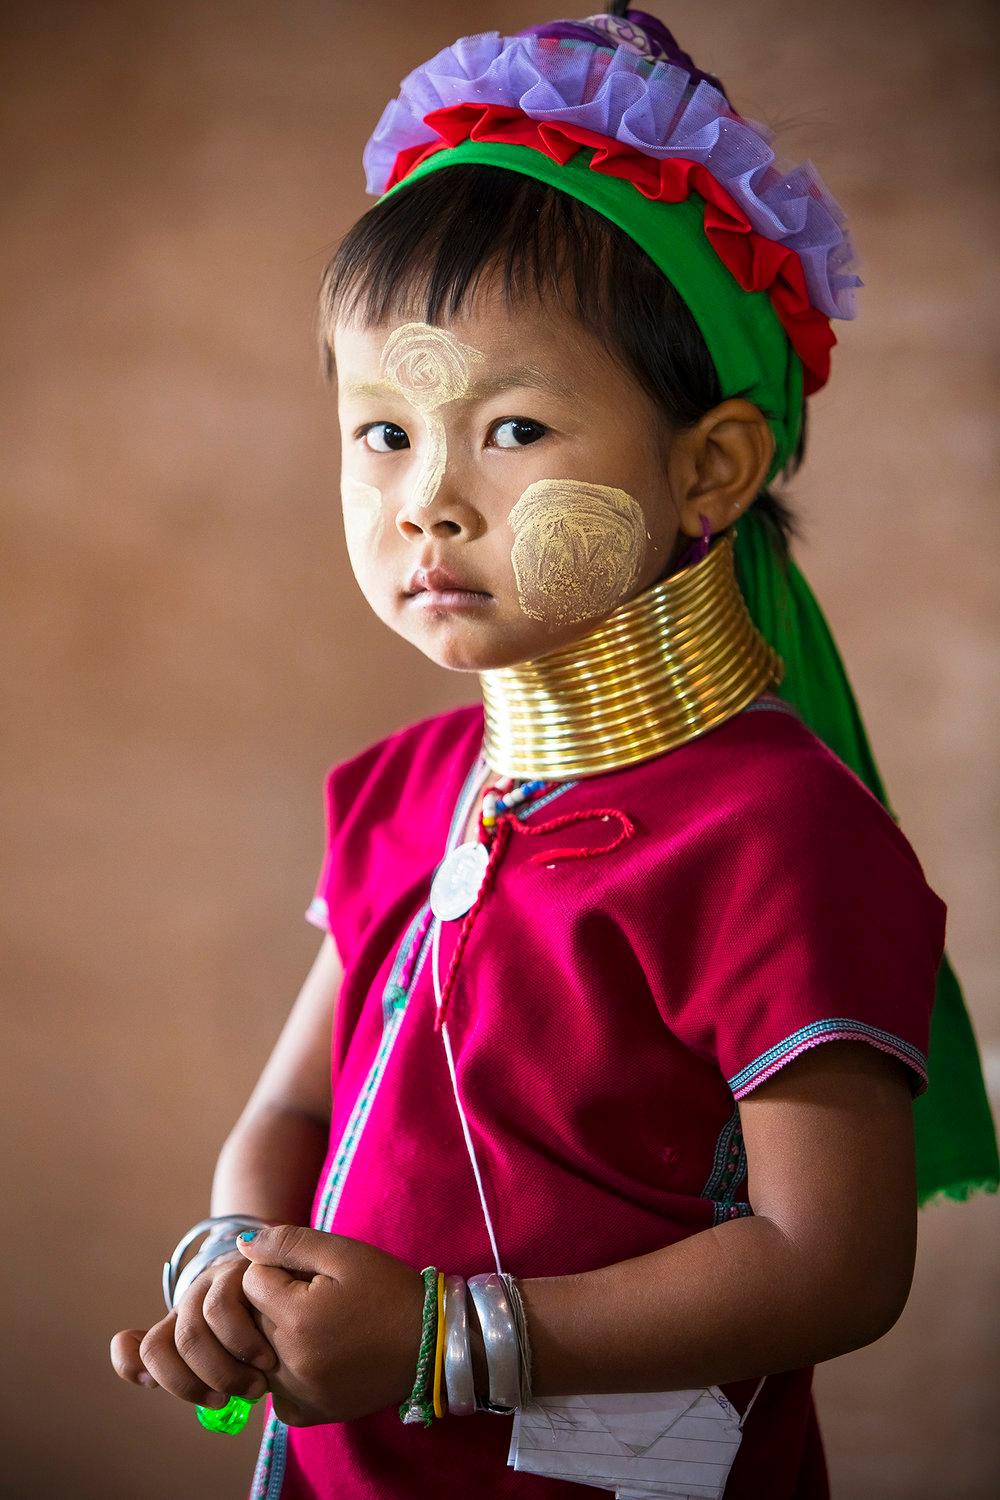 "Kayan Girl" Fotografie 40" x 26,5" Zoll Edition 2/7 von Safaa Kagan

Aus der Myanmar-Serie 2018 

ÜBER 

Safaa ist eine in Los Angeles lebende Fotografin, die es sich zur Aufgabe gemacht hat, die oberflächlichen Barrieren der Menschheit aufzulösen.